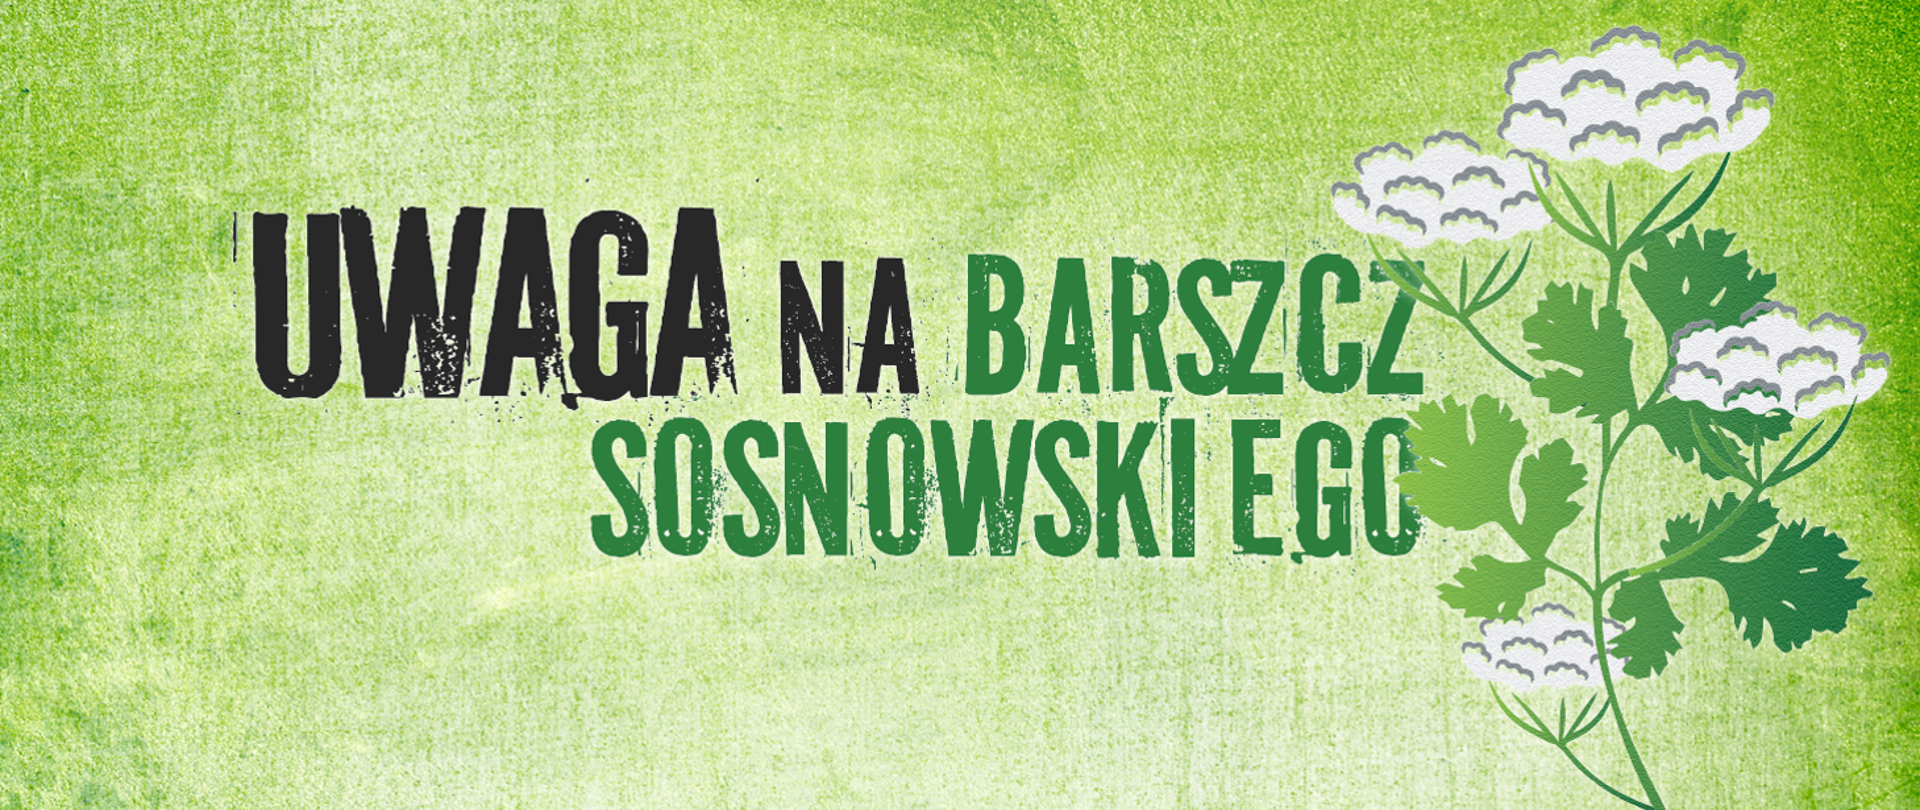 Napis "Uwaga na barszcz Sosnowskiego" razem z rysunkiem rośliny na zielonym tle